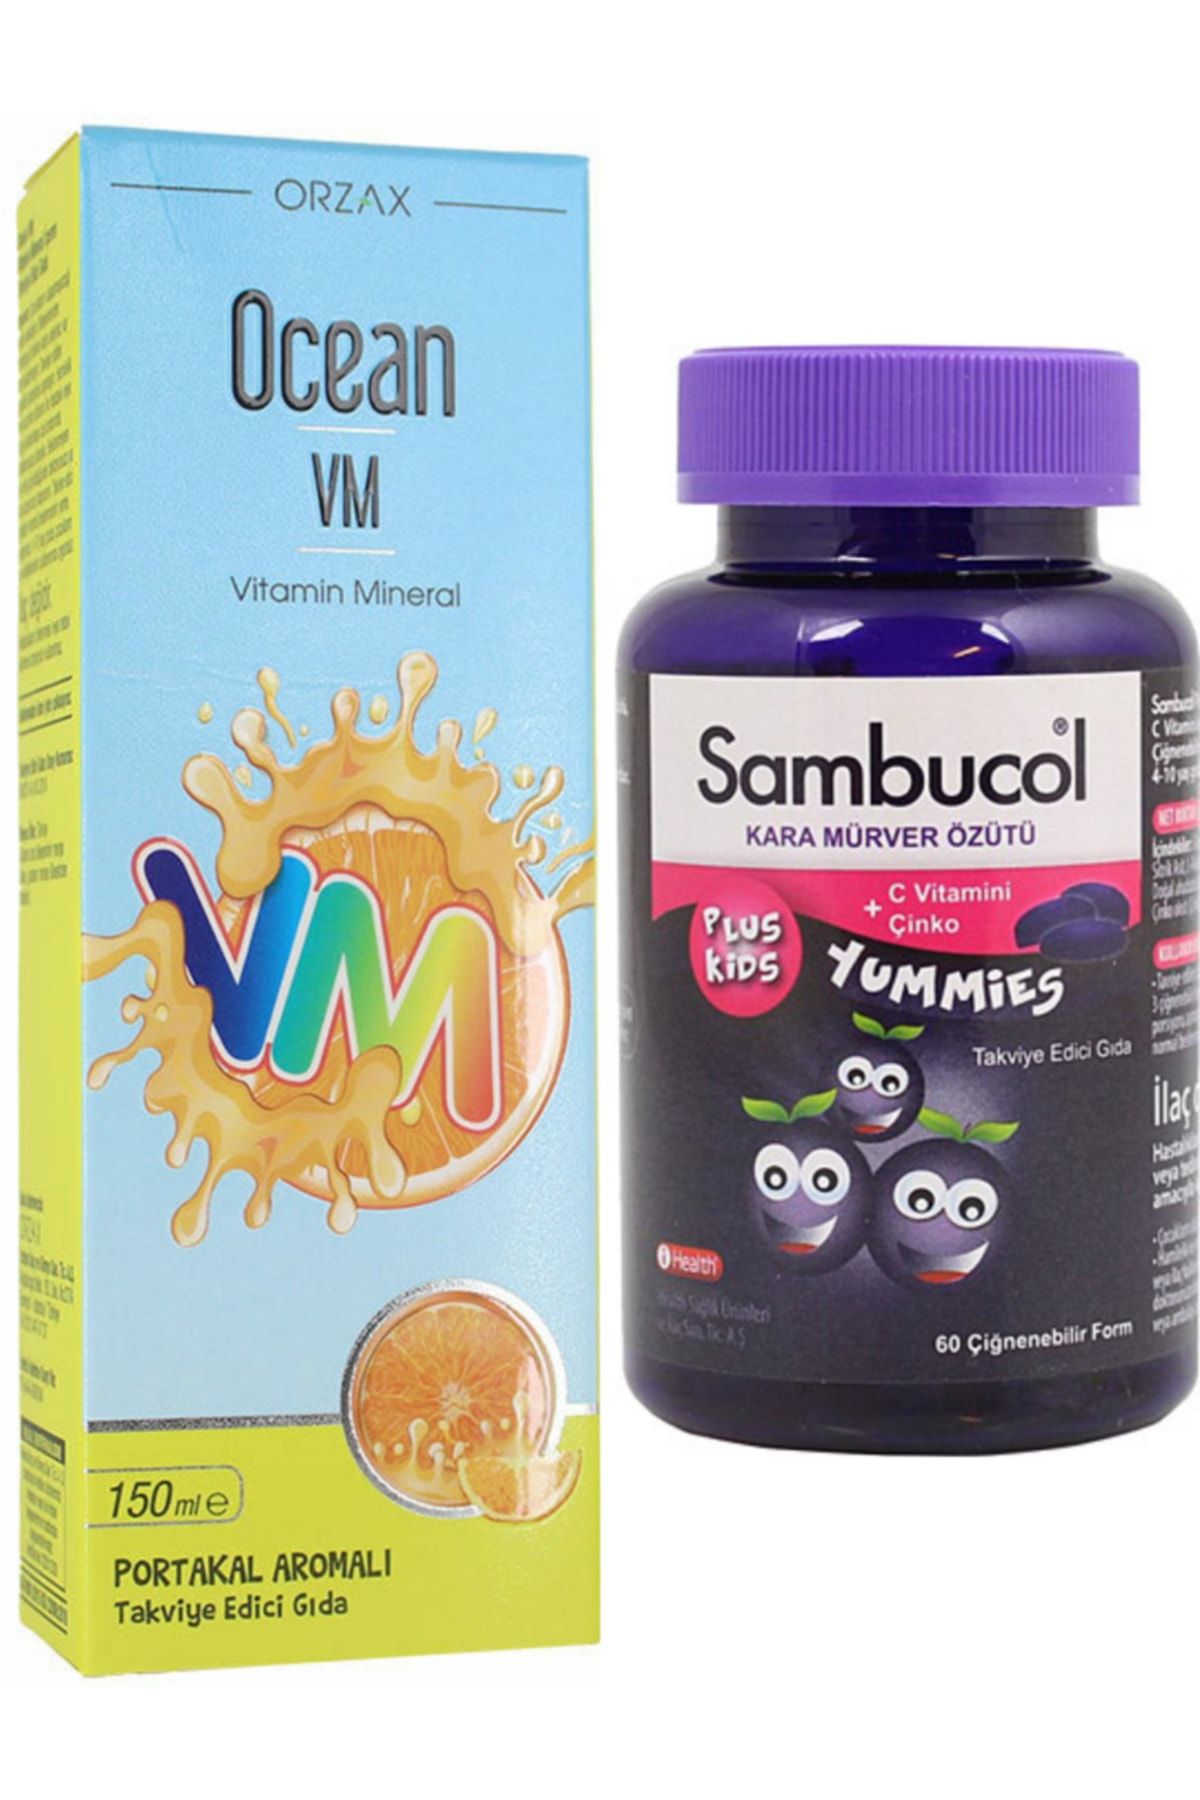 Ocean Vitamin Mineral Şurup 150ml Sambucol Plus Kids Yummies 60 Çiğnenebilir Form